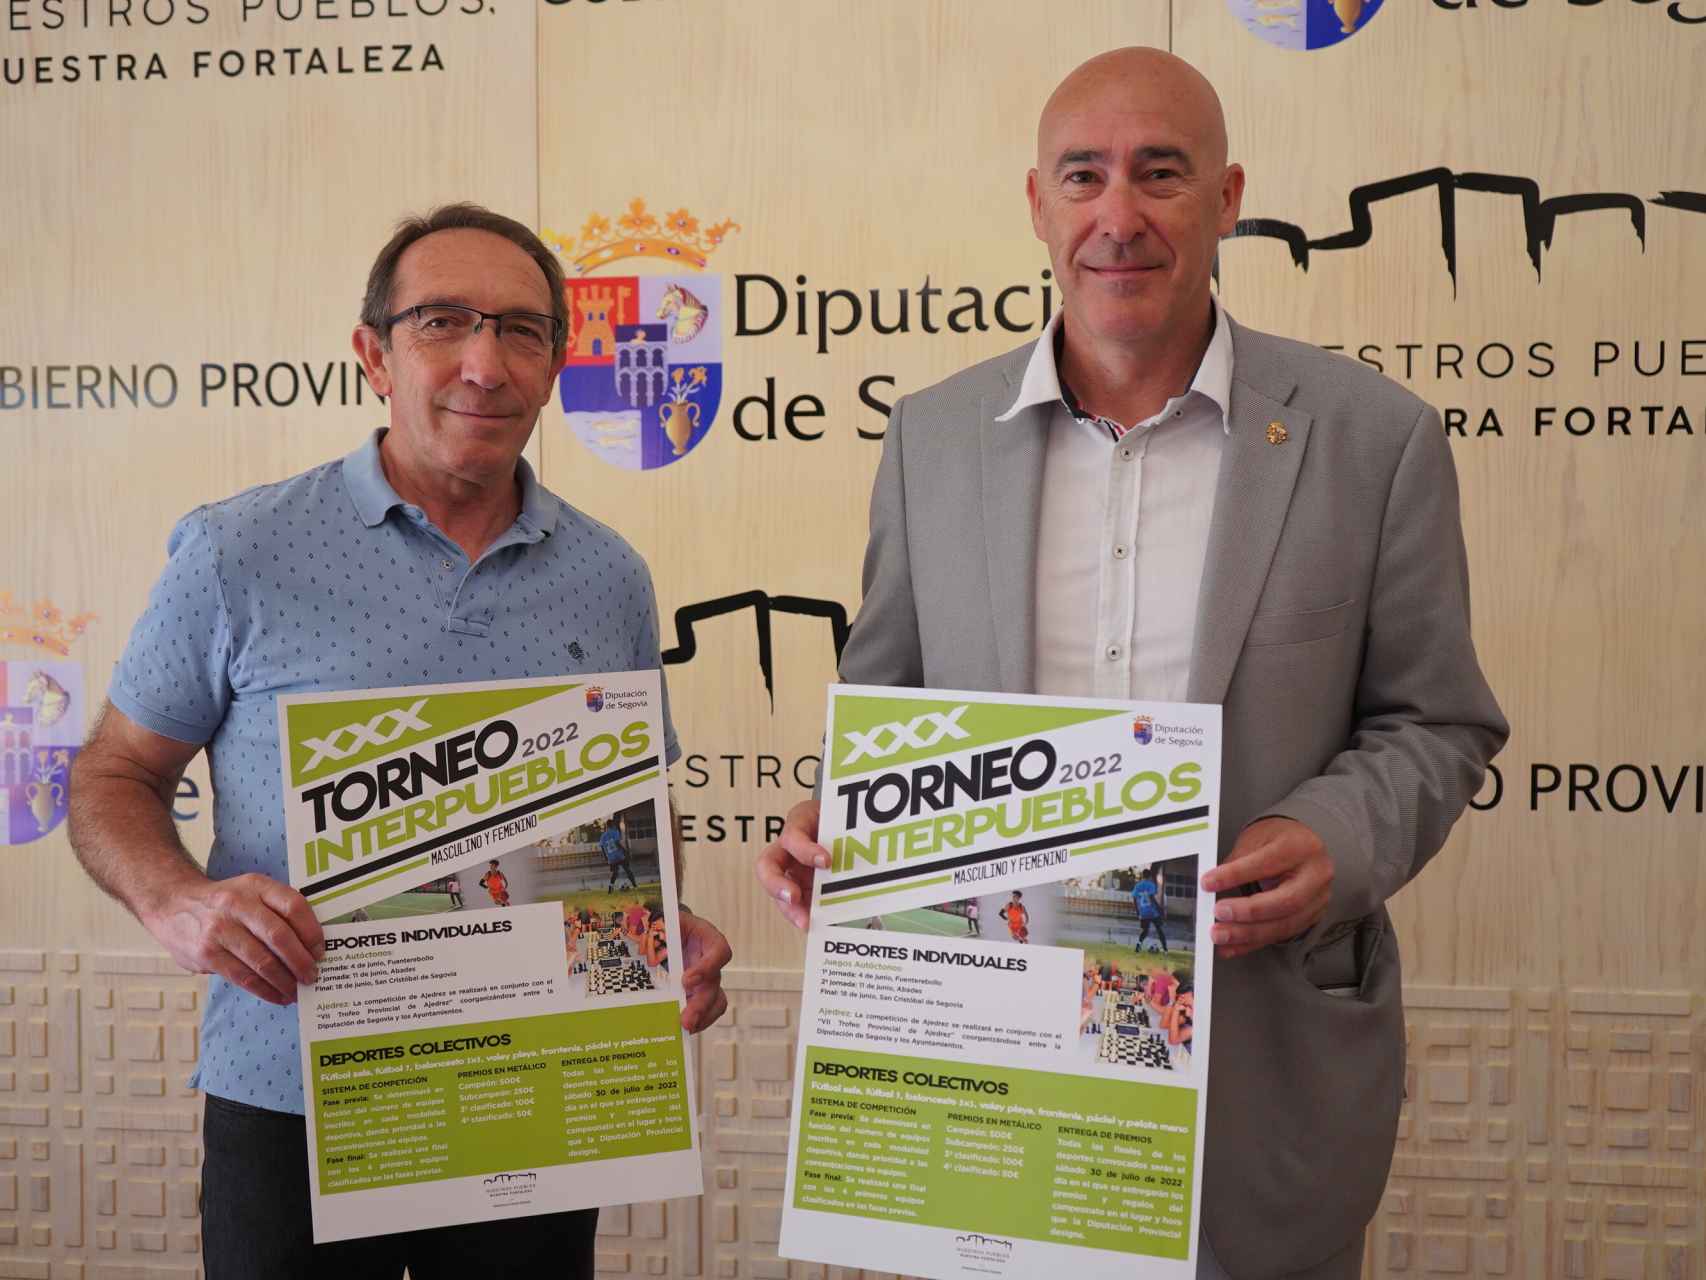 El Torneo Interpueblos regresa a Segovia con un presupuesto de más de 50.000 euros